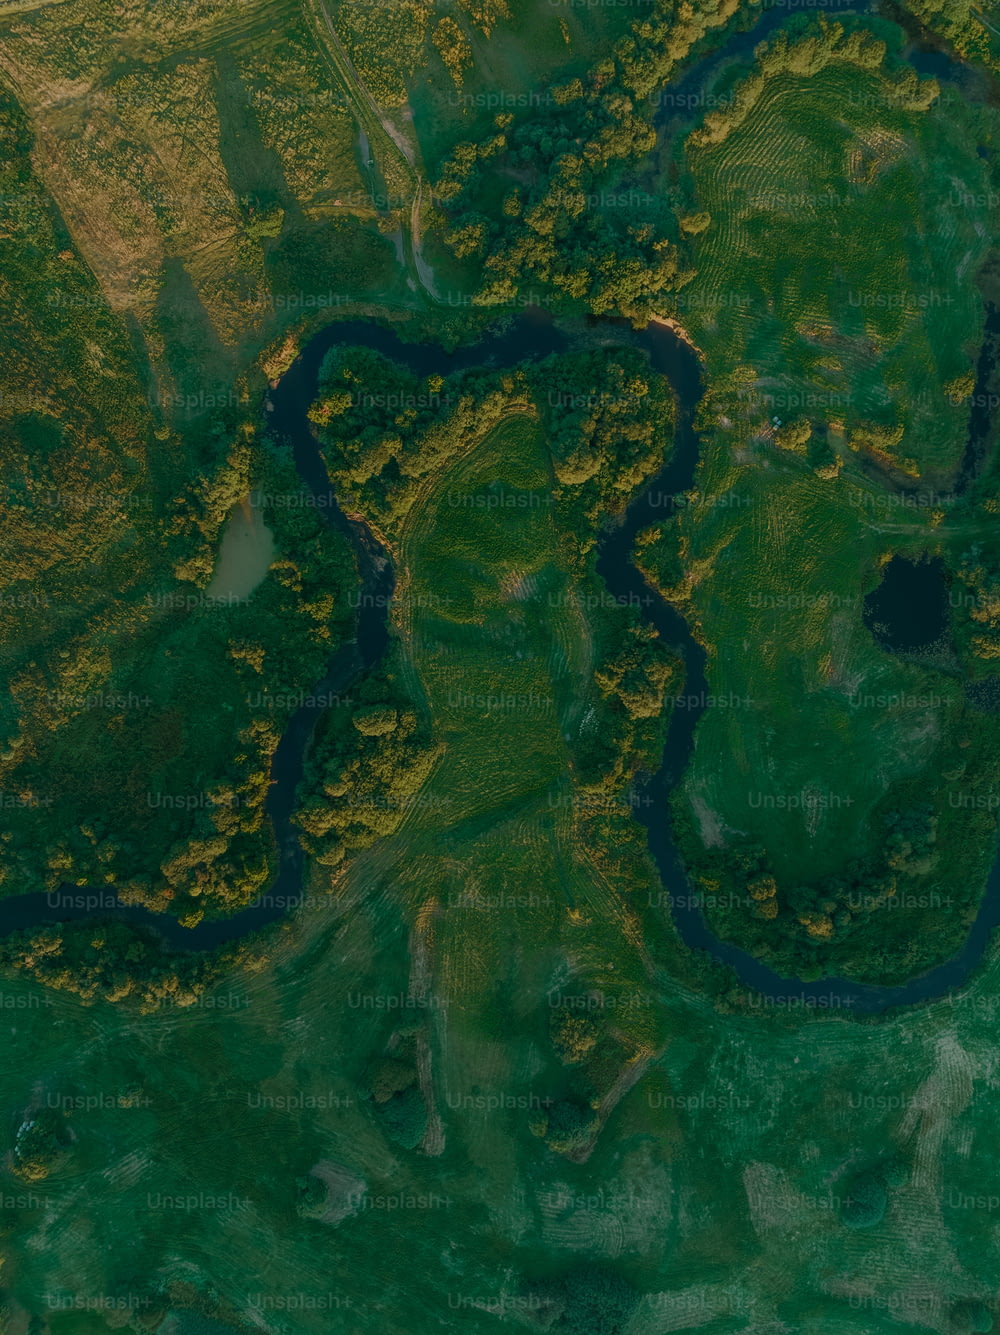 Eine Luftaufnahme eines Flusses, der durch ein üppig grünes Feld fließt